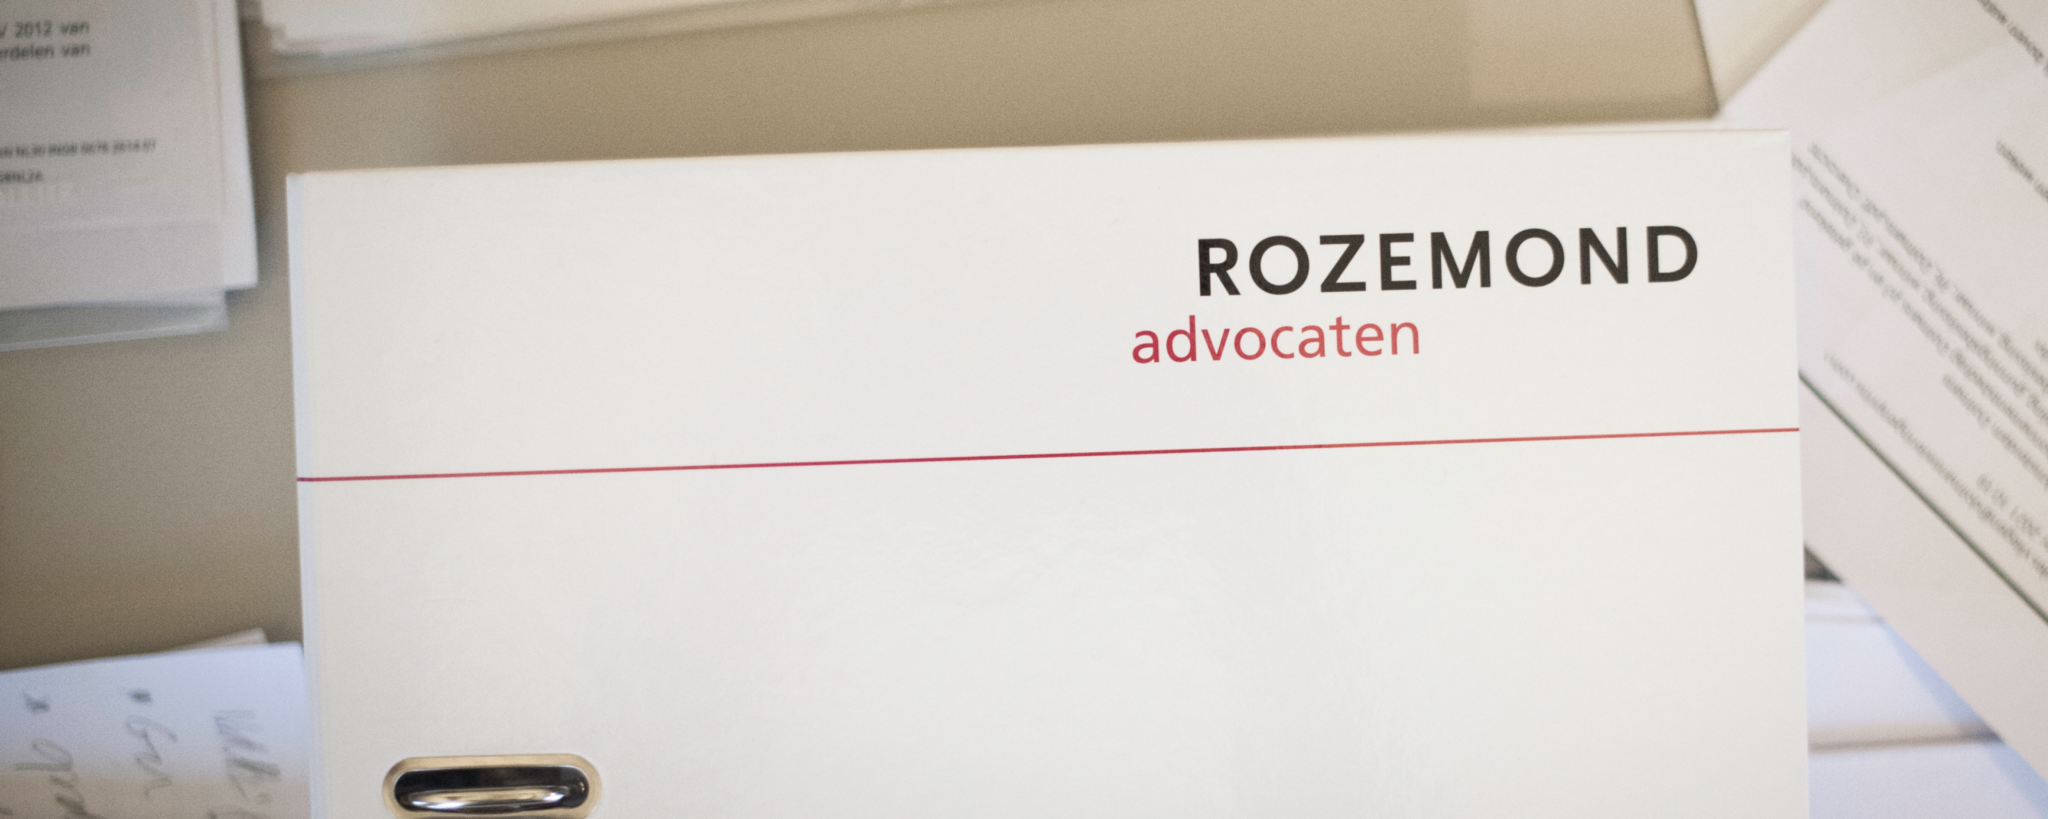 Een tafel vol papieren dossiers en een map van Rozemond Advocaten.